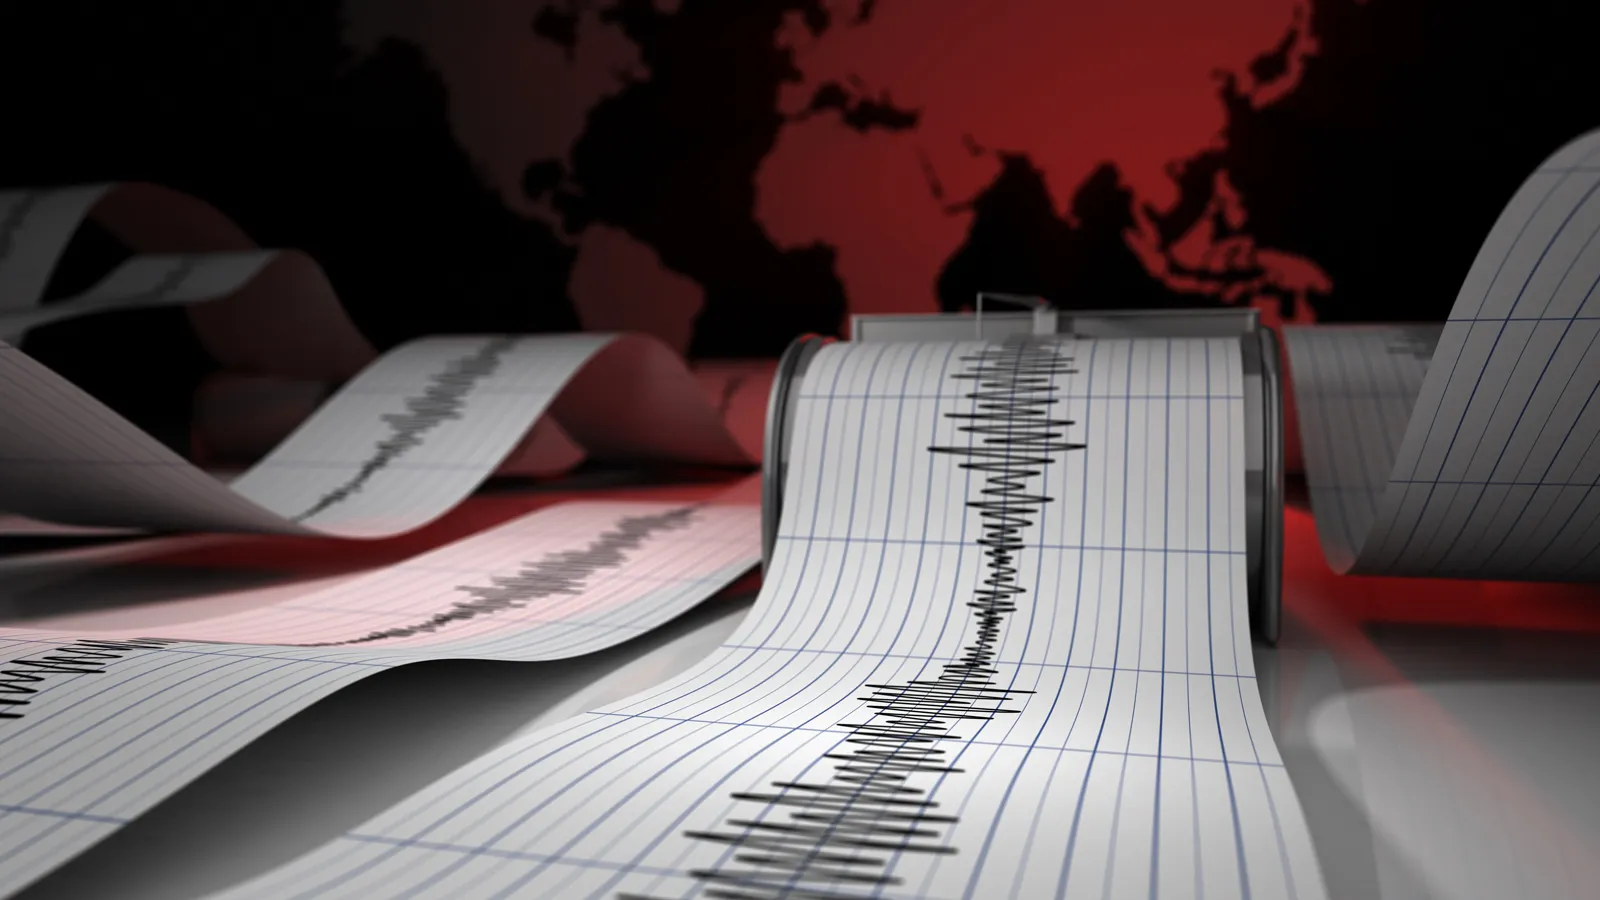 Kahramanmaraş Elbistan'da şiddetli deprem oldu! AFAD ve Kandilli son dakika duyurdu: İşte depremin ayrıntıları